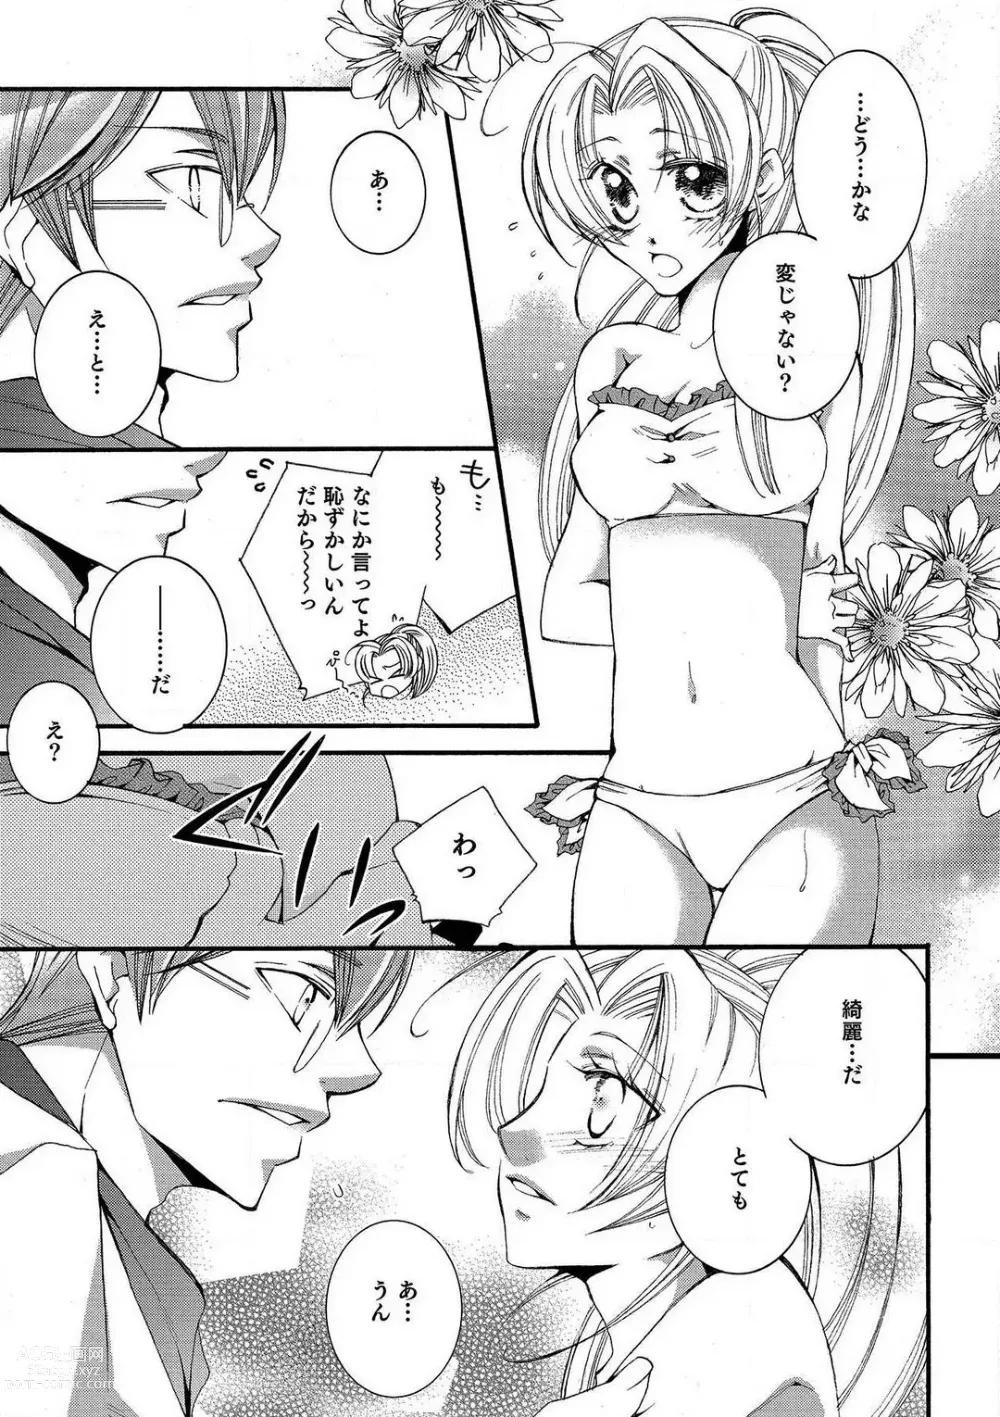 Page 65 of manga LOVE×PLAY 1-4